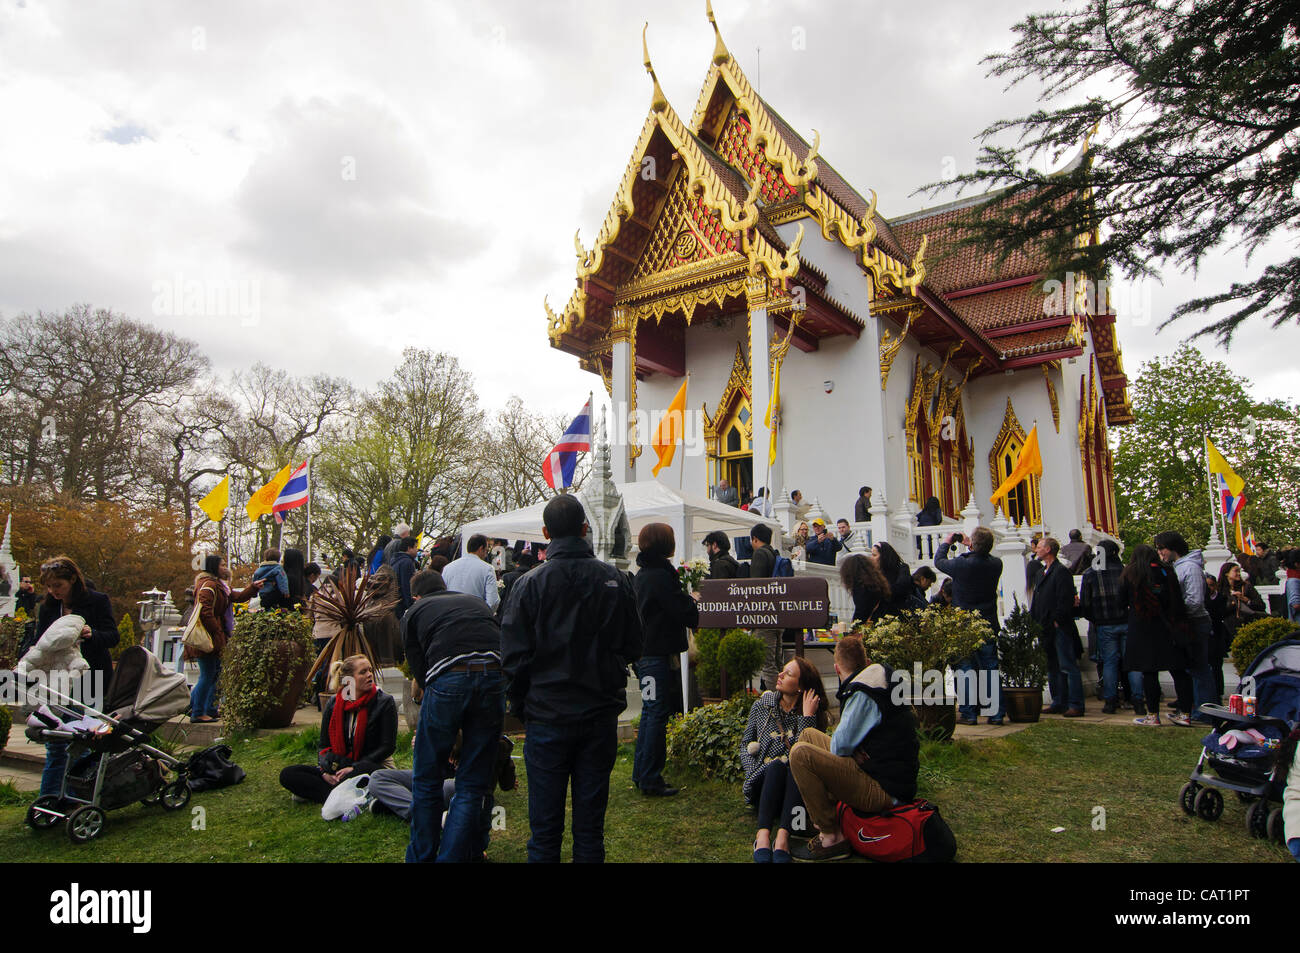 Wimbledon, Londres, Royaume-Uni, 15 avril 2012. Les foules se rassemblent à la Thai temple de Wat Buddhapadipa pour célébrer Songkran, Nouvel An thaï. Banque D'Images